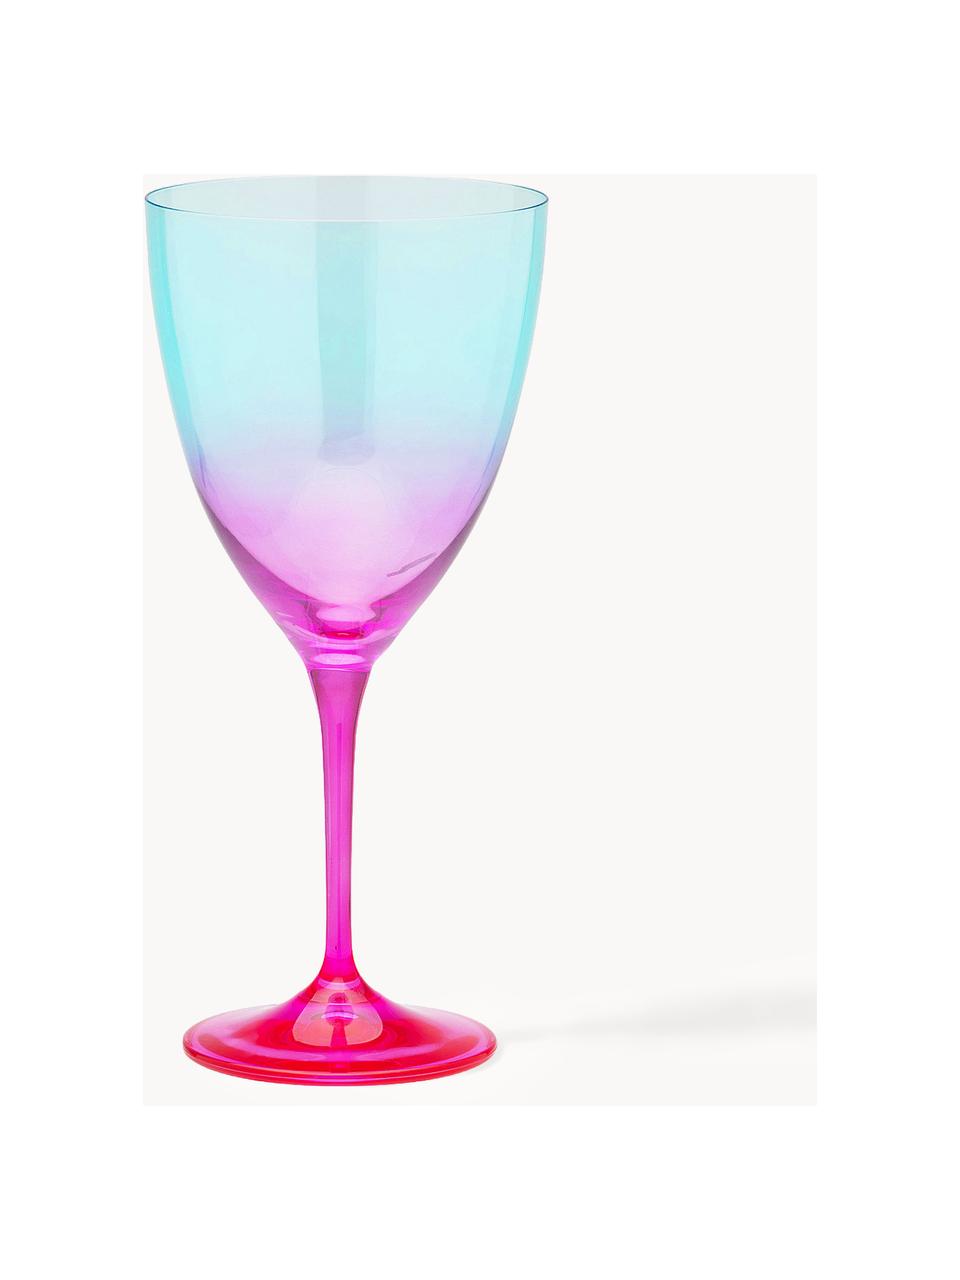 Weingläser Ombre Flash, 2 Stück, Glas, Türkis, Pink, Ø 10 x H 12 cm, 400 ml